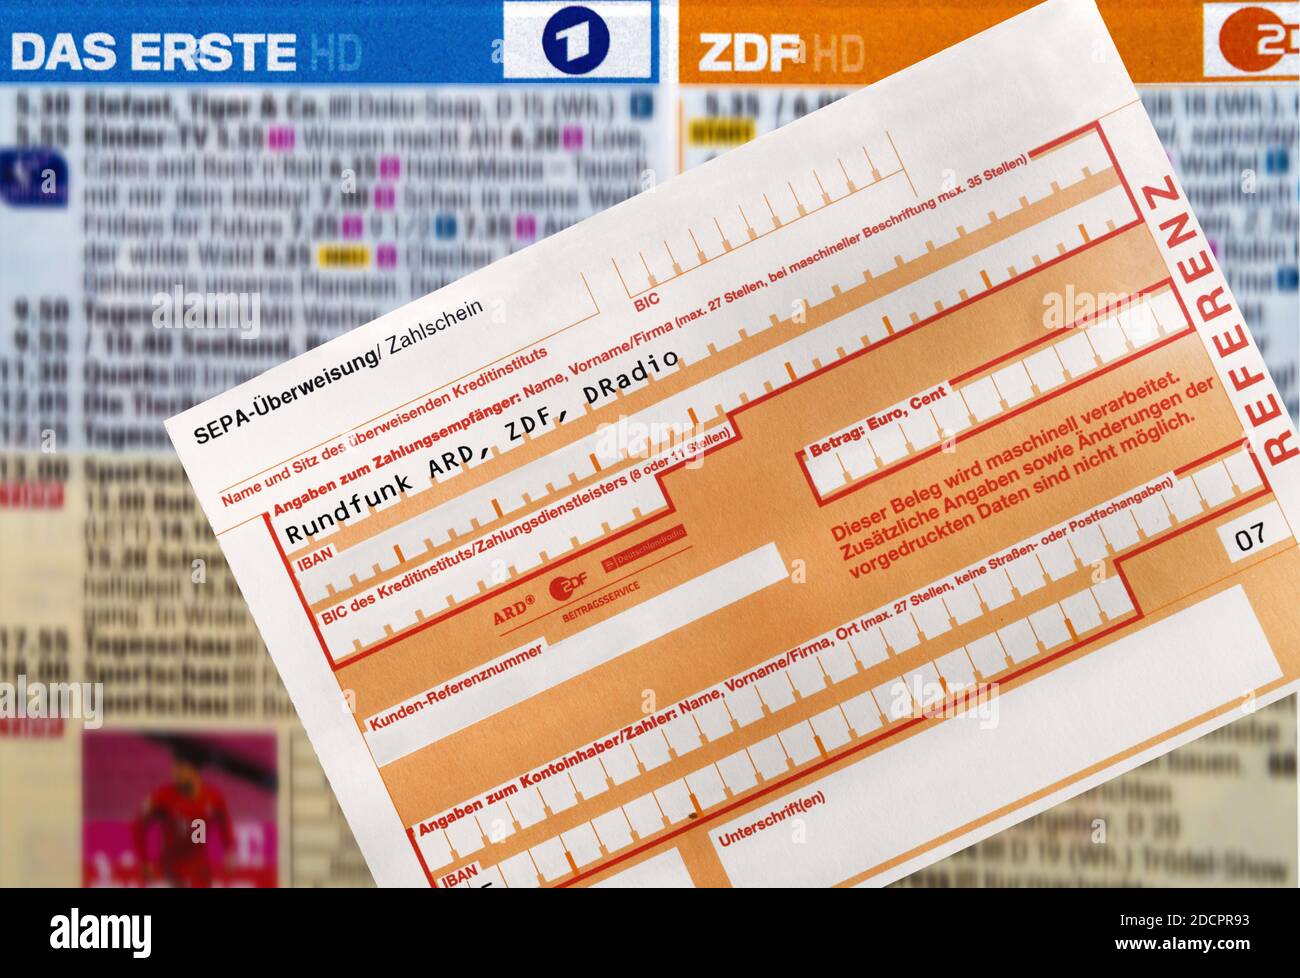 Bank transfer form for german radio and tv. Radio licence fees for ARD, ZDF and german radio. Überweisungsformular für deutsches Radio und Fernsehen. Stock Photo